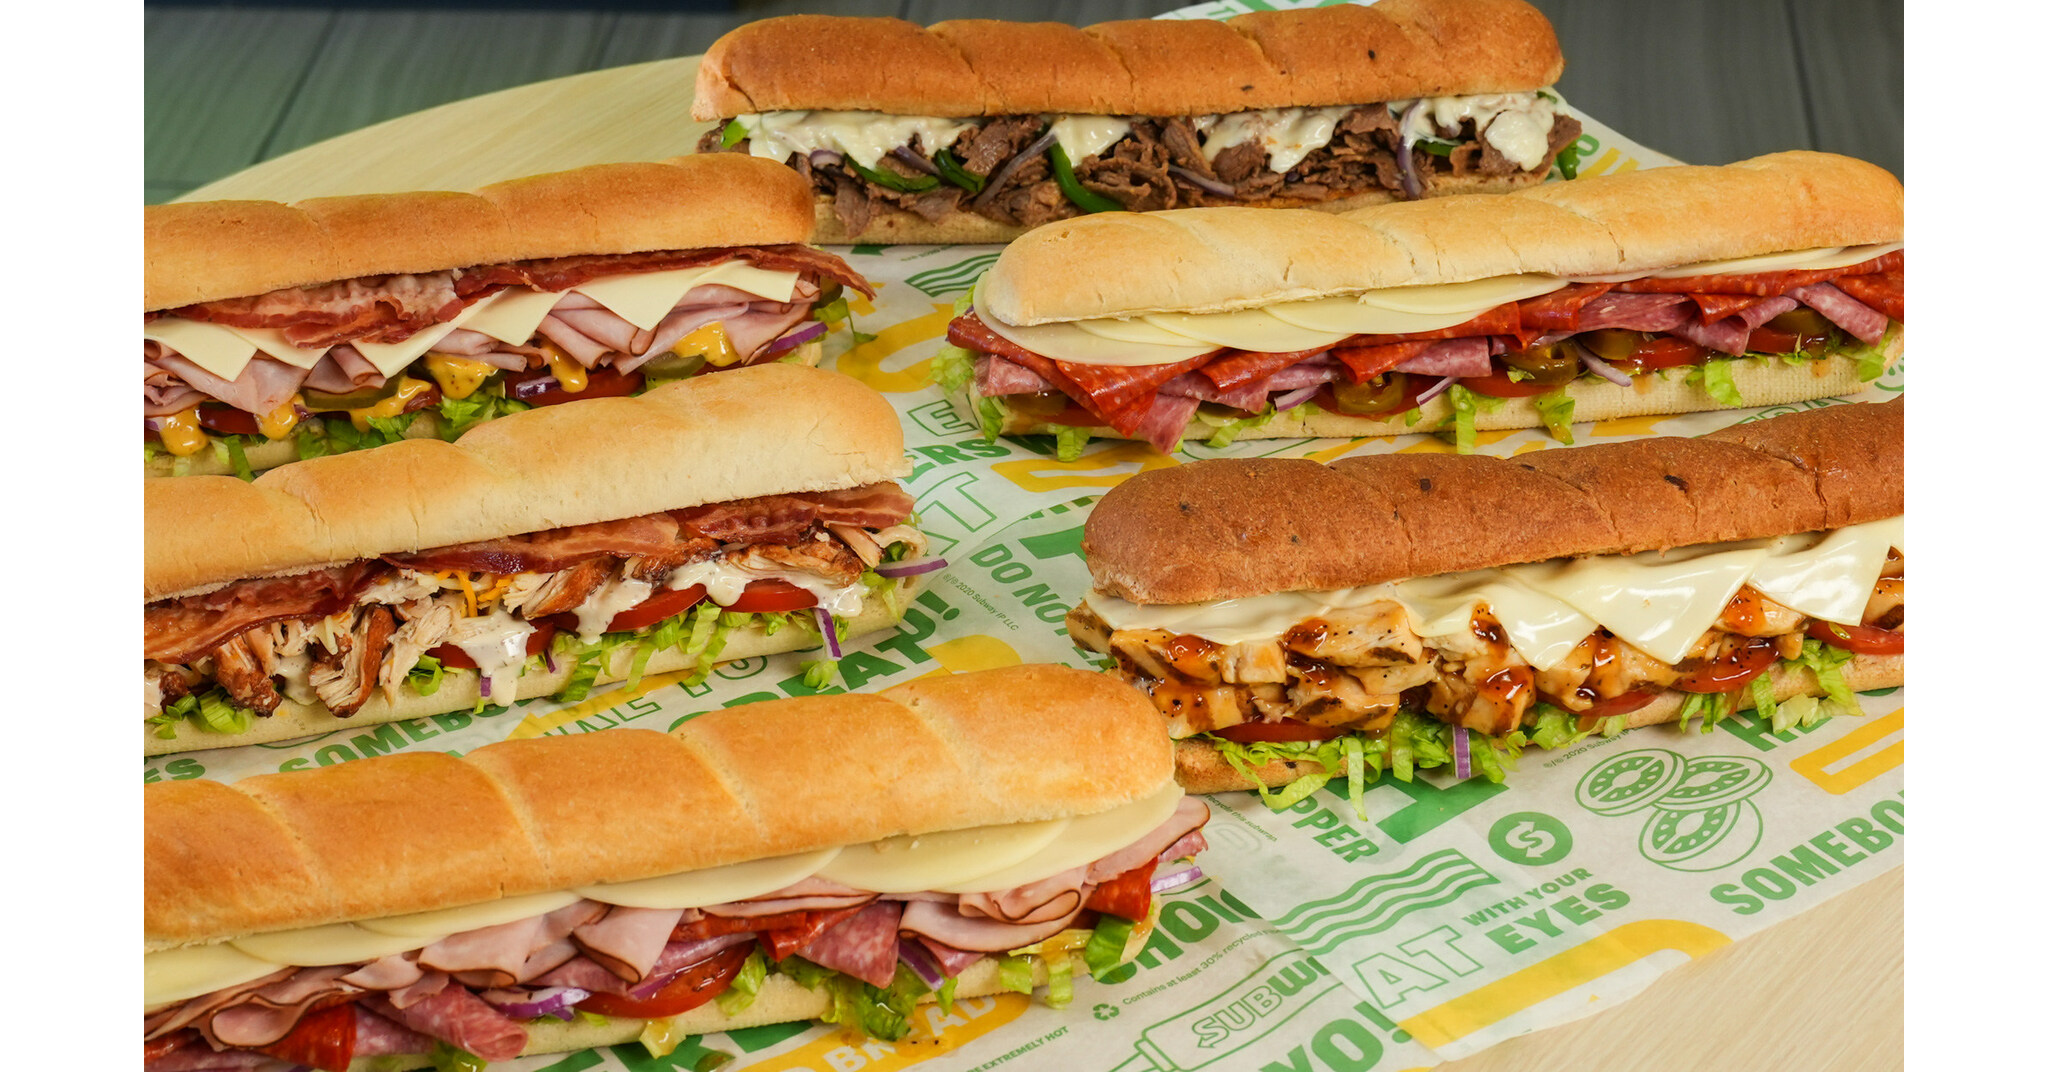 Subway® amplía el menú de la cadena Subway para establecer récords por primera vez, agregando sándwiches completamente nuevos y actualizando los clásicos